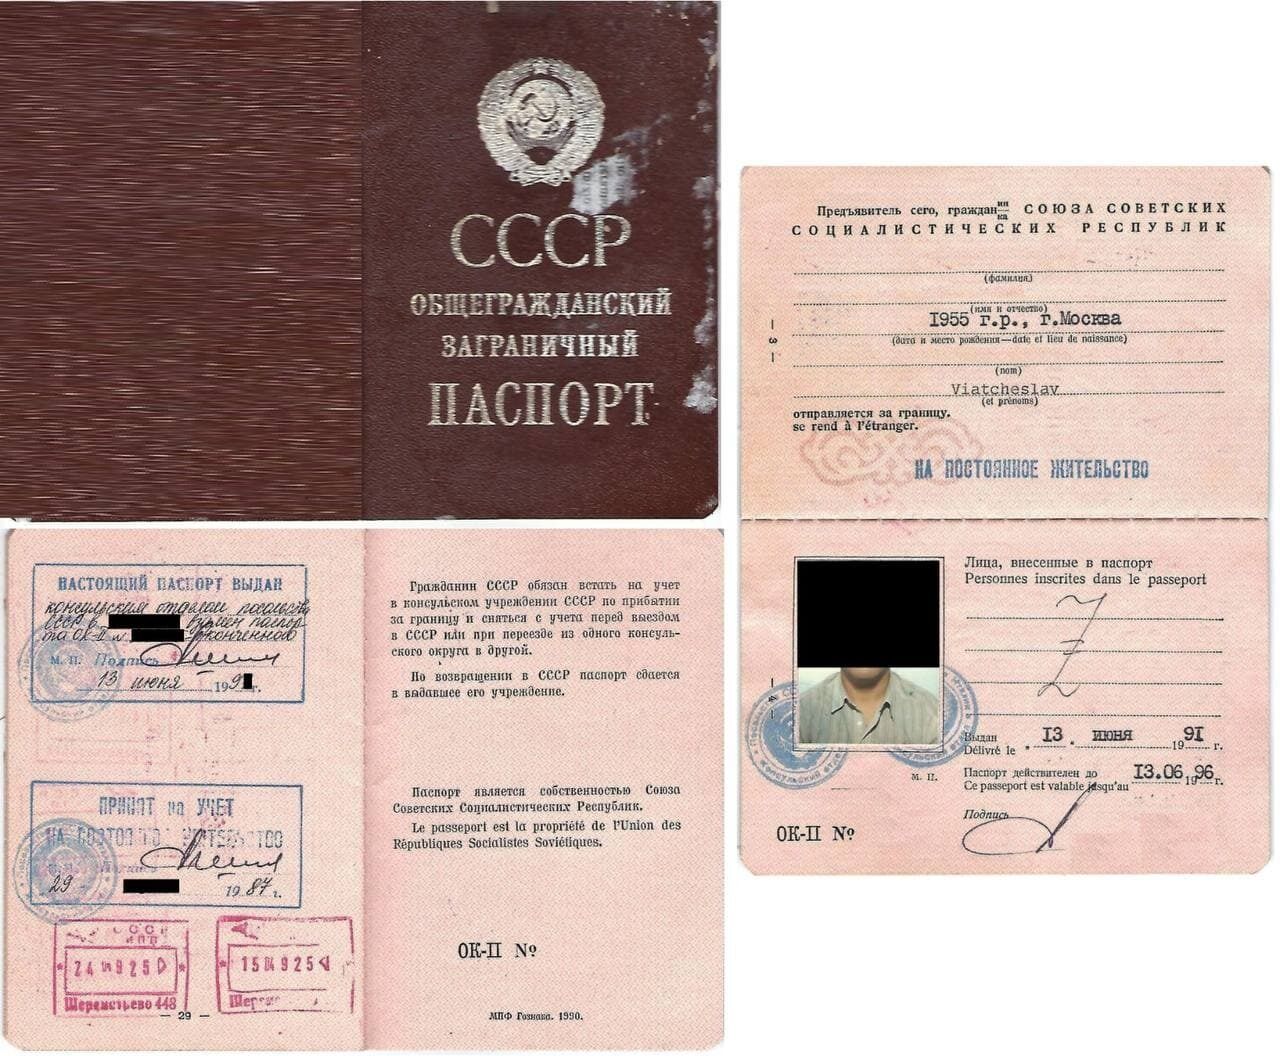 История эмиграции из СССР и текущие положения по эмиграции из стран СНГ